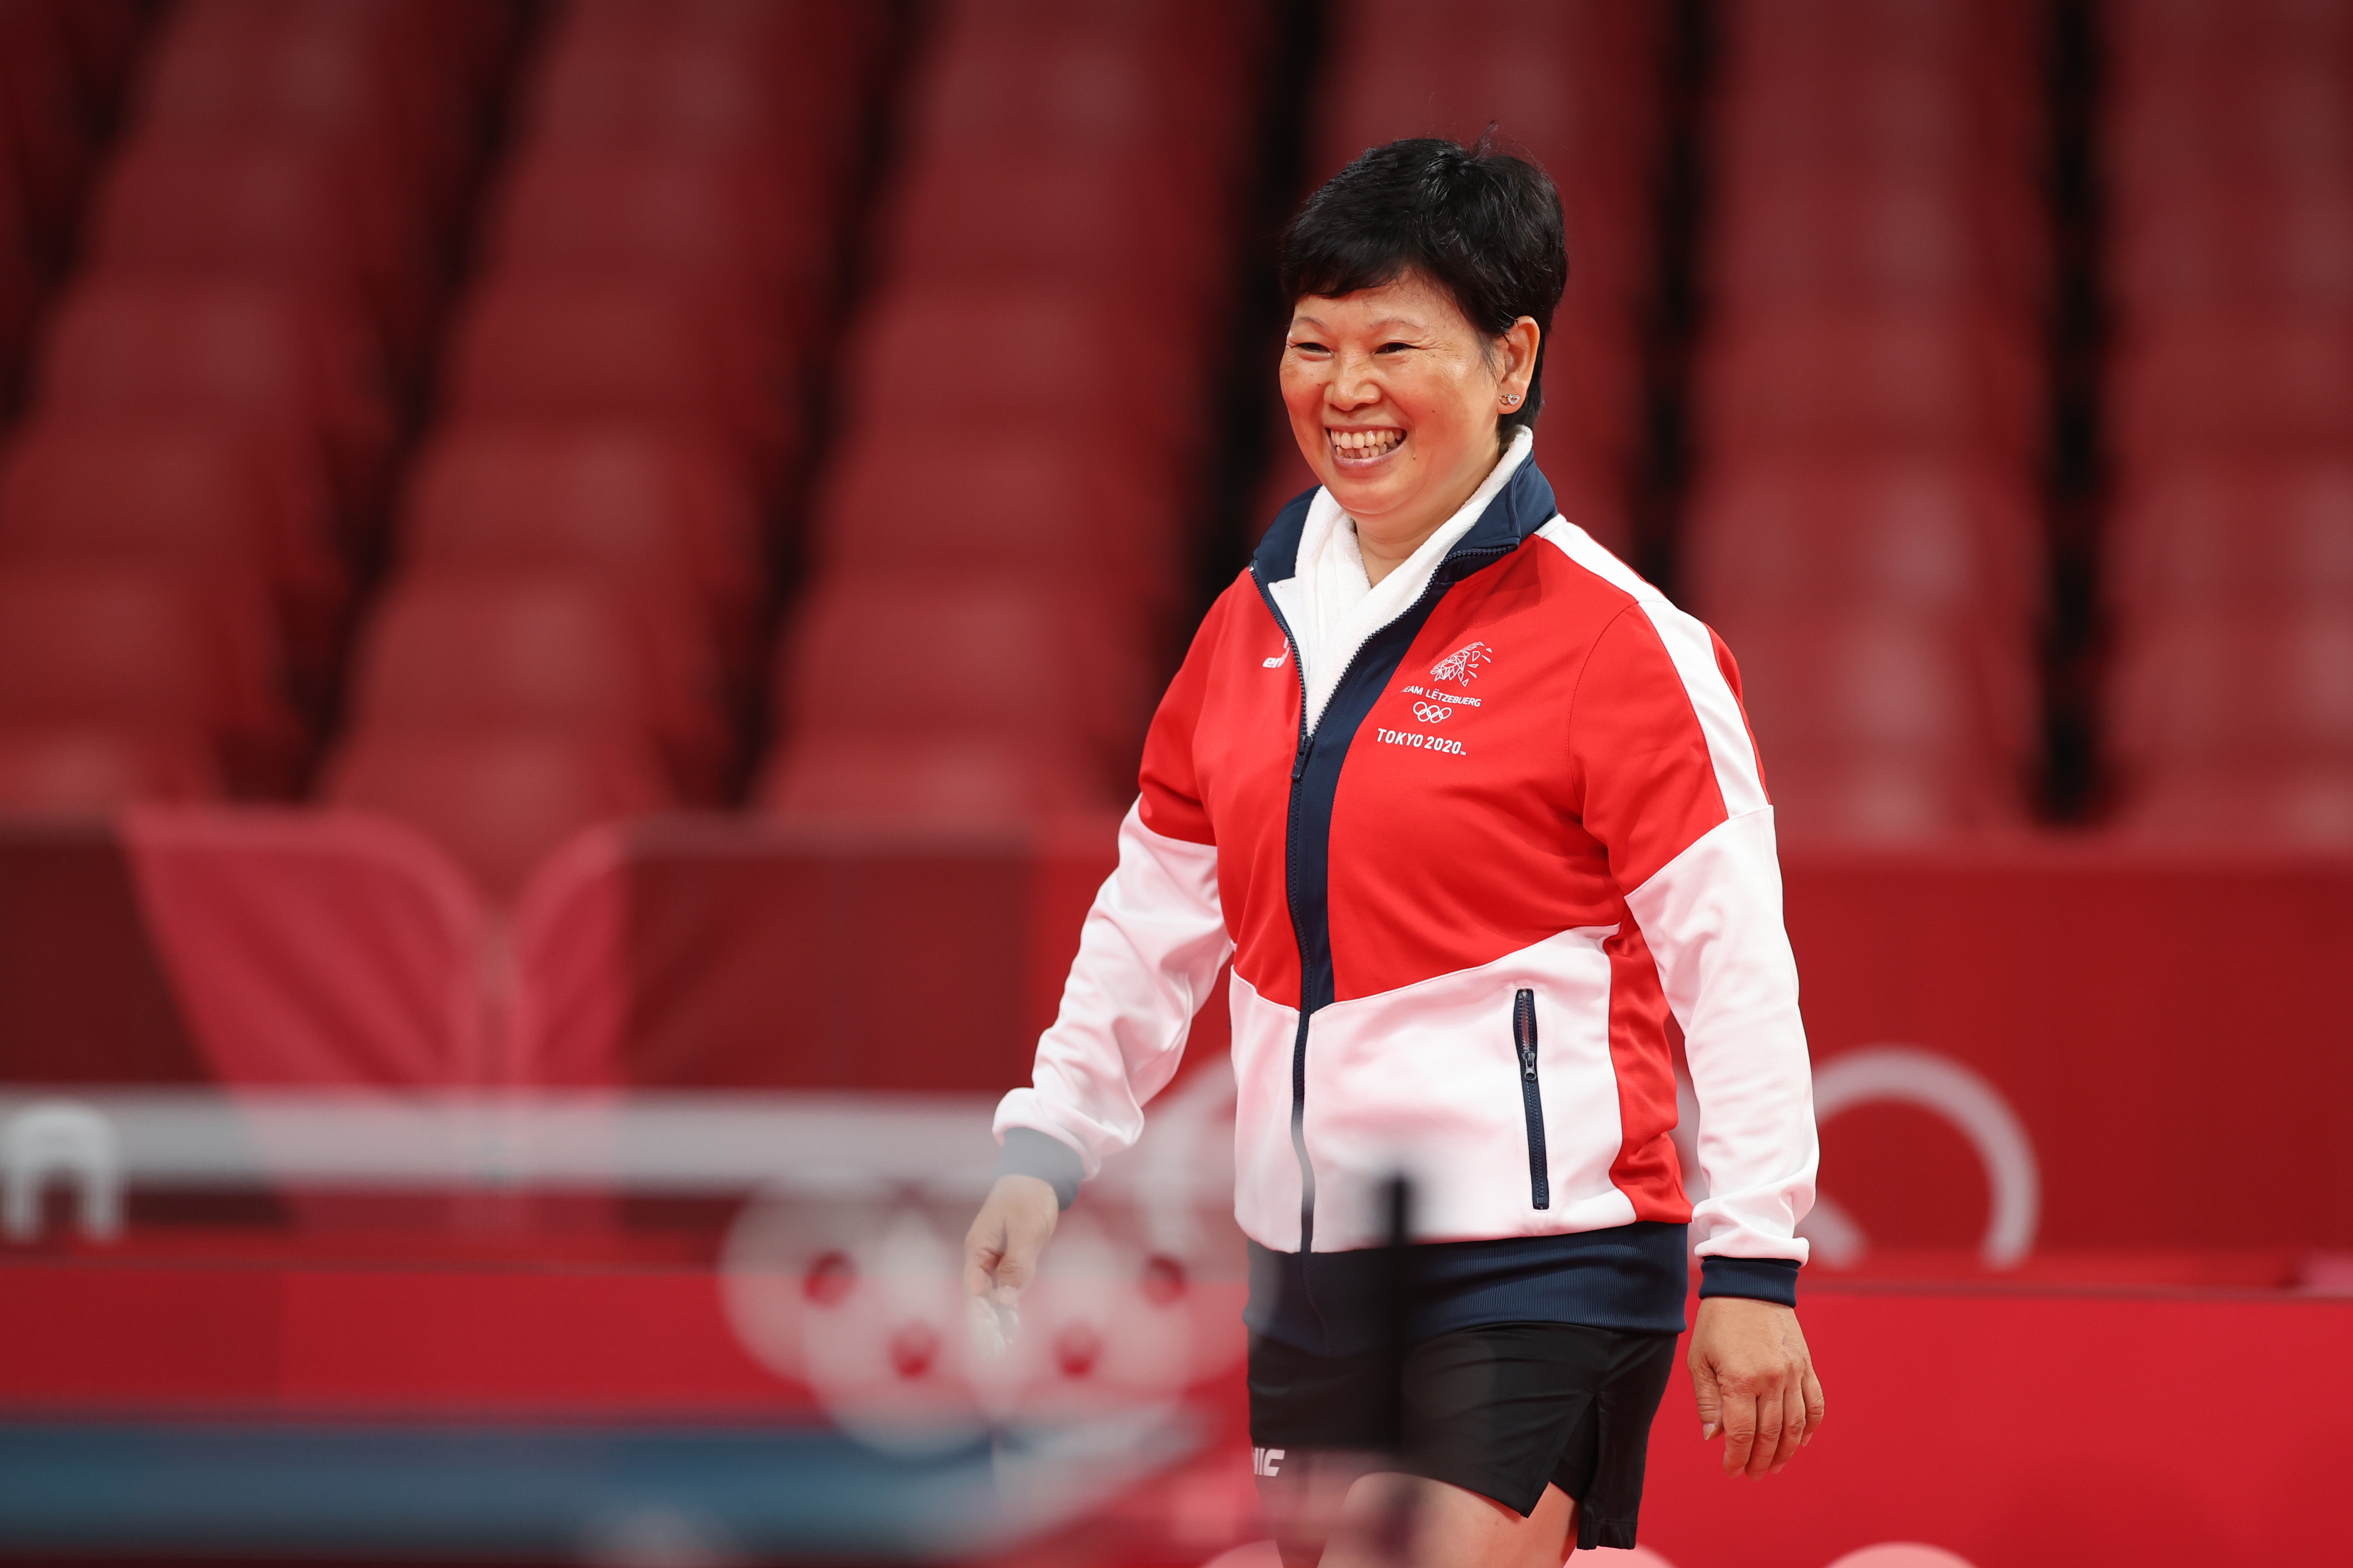 2021年7月25日，在日本东京体育馆举行的东京奥运会乒乓球项目女子单打第二轮比赛中，卢森堡老将倪夏莲准备出场比赛。新华社记者 郑焕松 摄